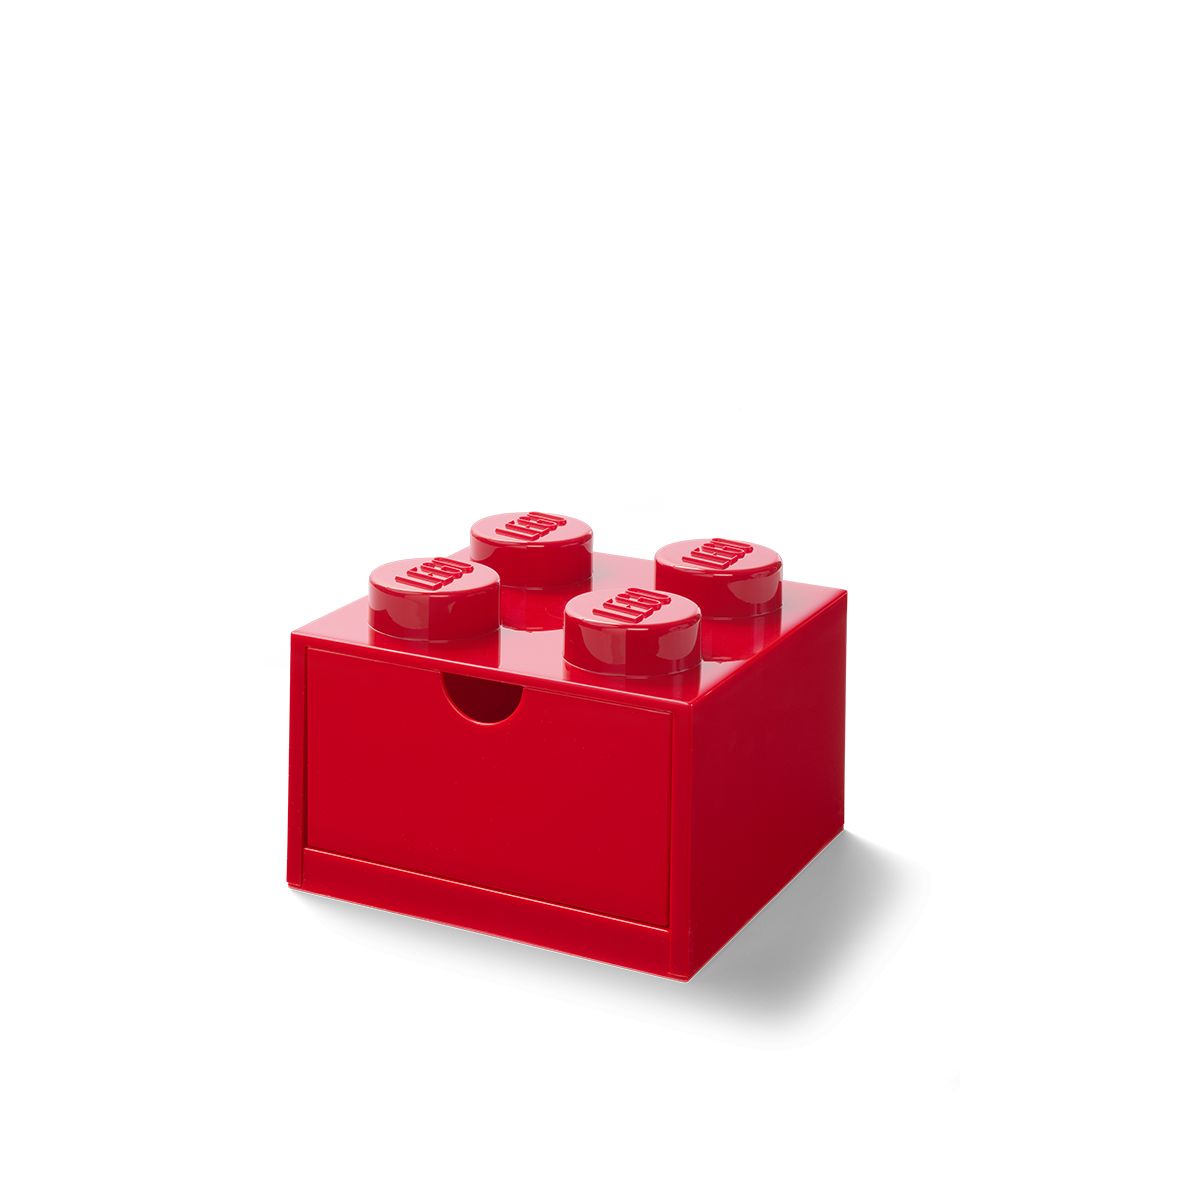 LEGO Gear 5006140 AUFBEWAHRUNGSSTEIN MIT SCHUBFACH UND 4 NOPPEN IN ROT LEGO_5006140_alt2.jpg